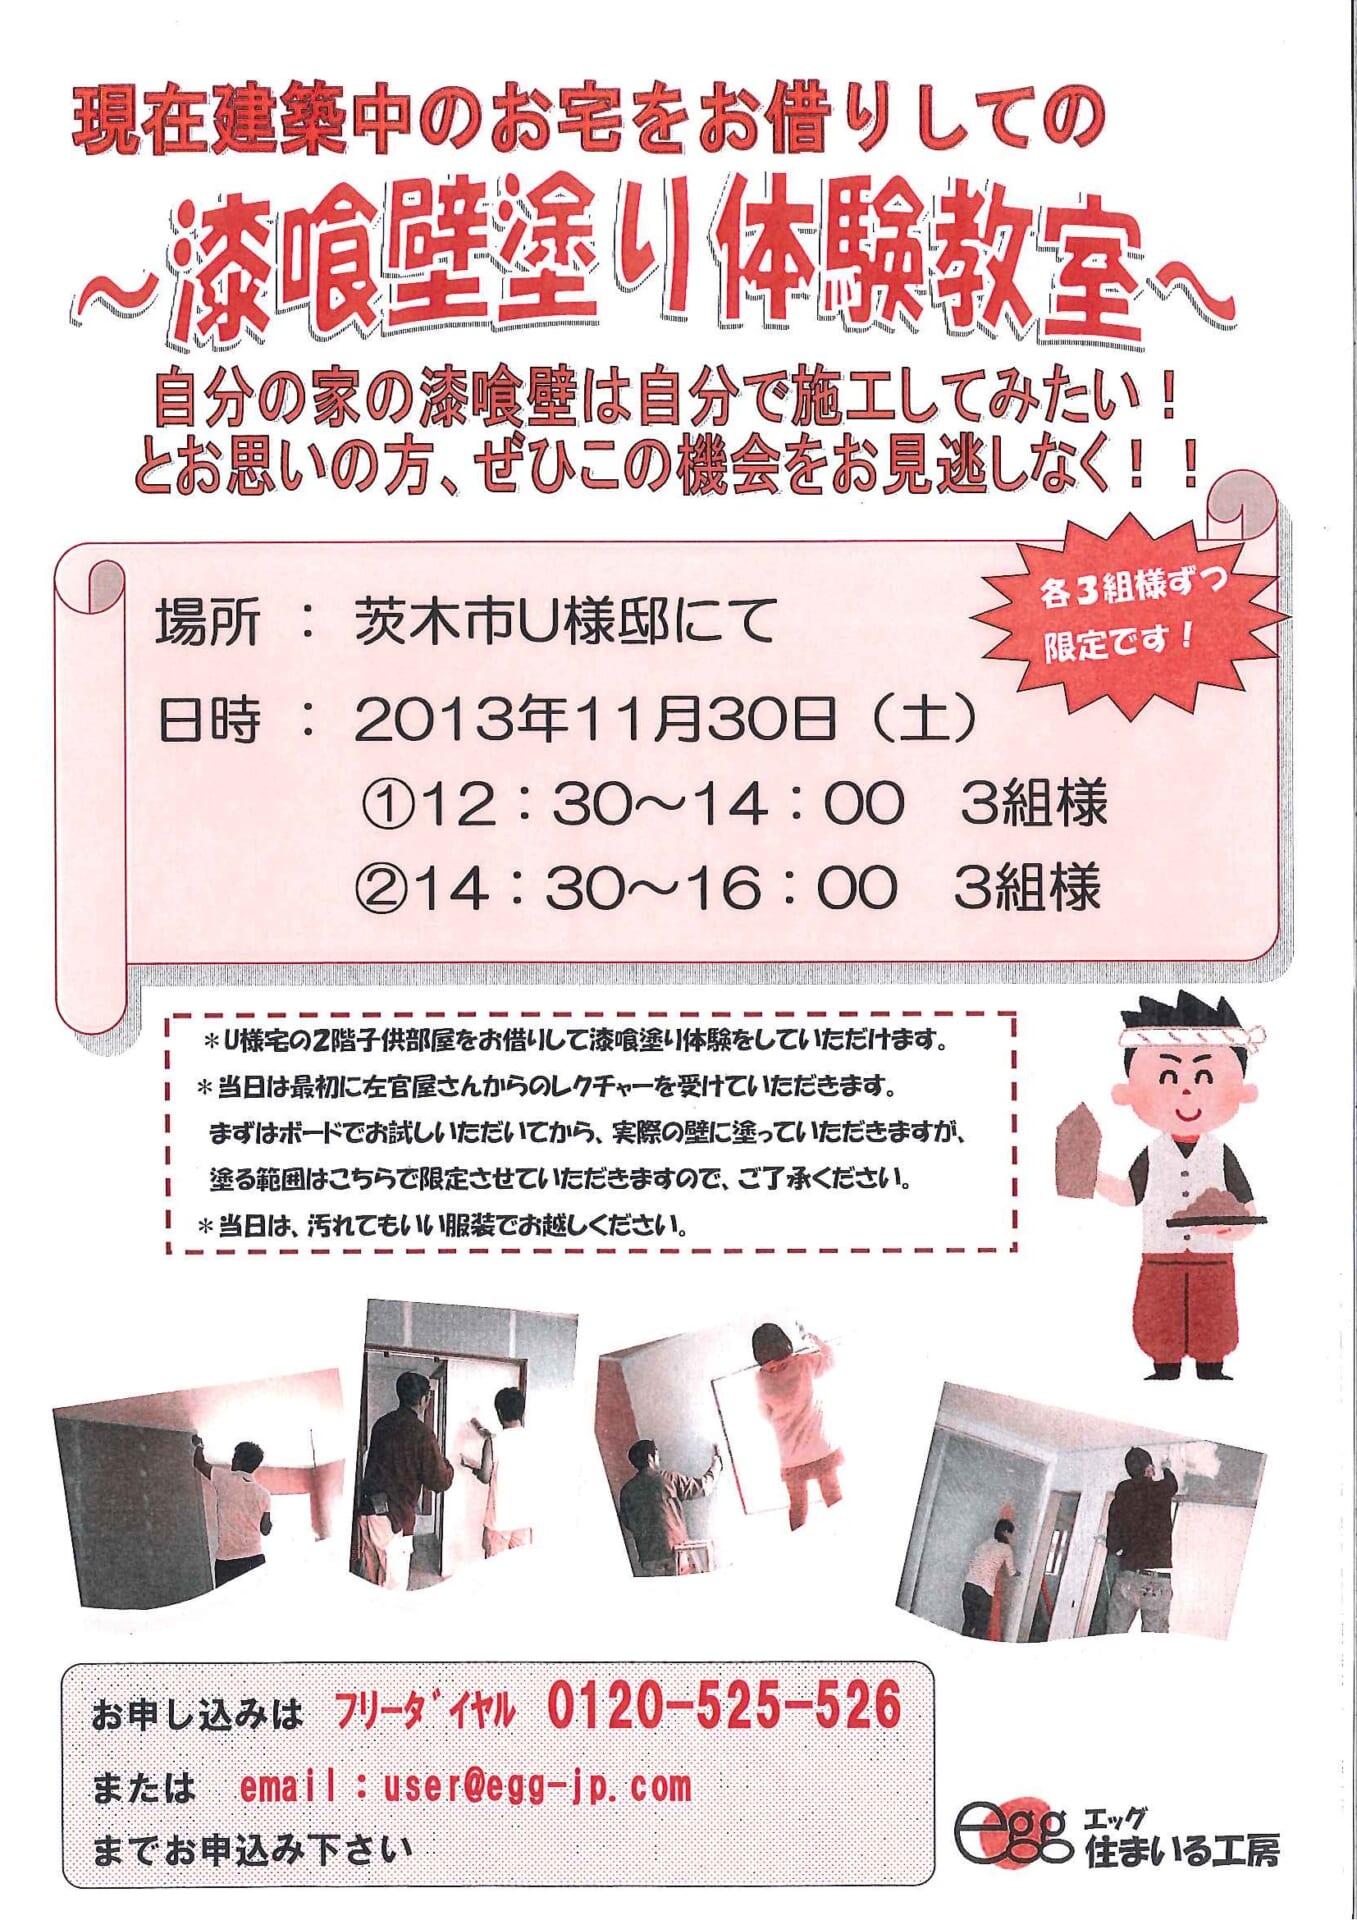 漆喰壁塗り体験教室 13 11月号 大阪府茨木市で自然素材の注文住宅のご相談はエッグ住まいる工房へ